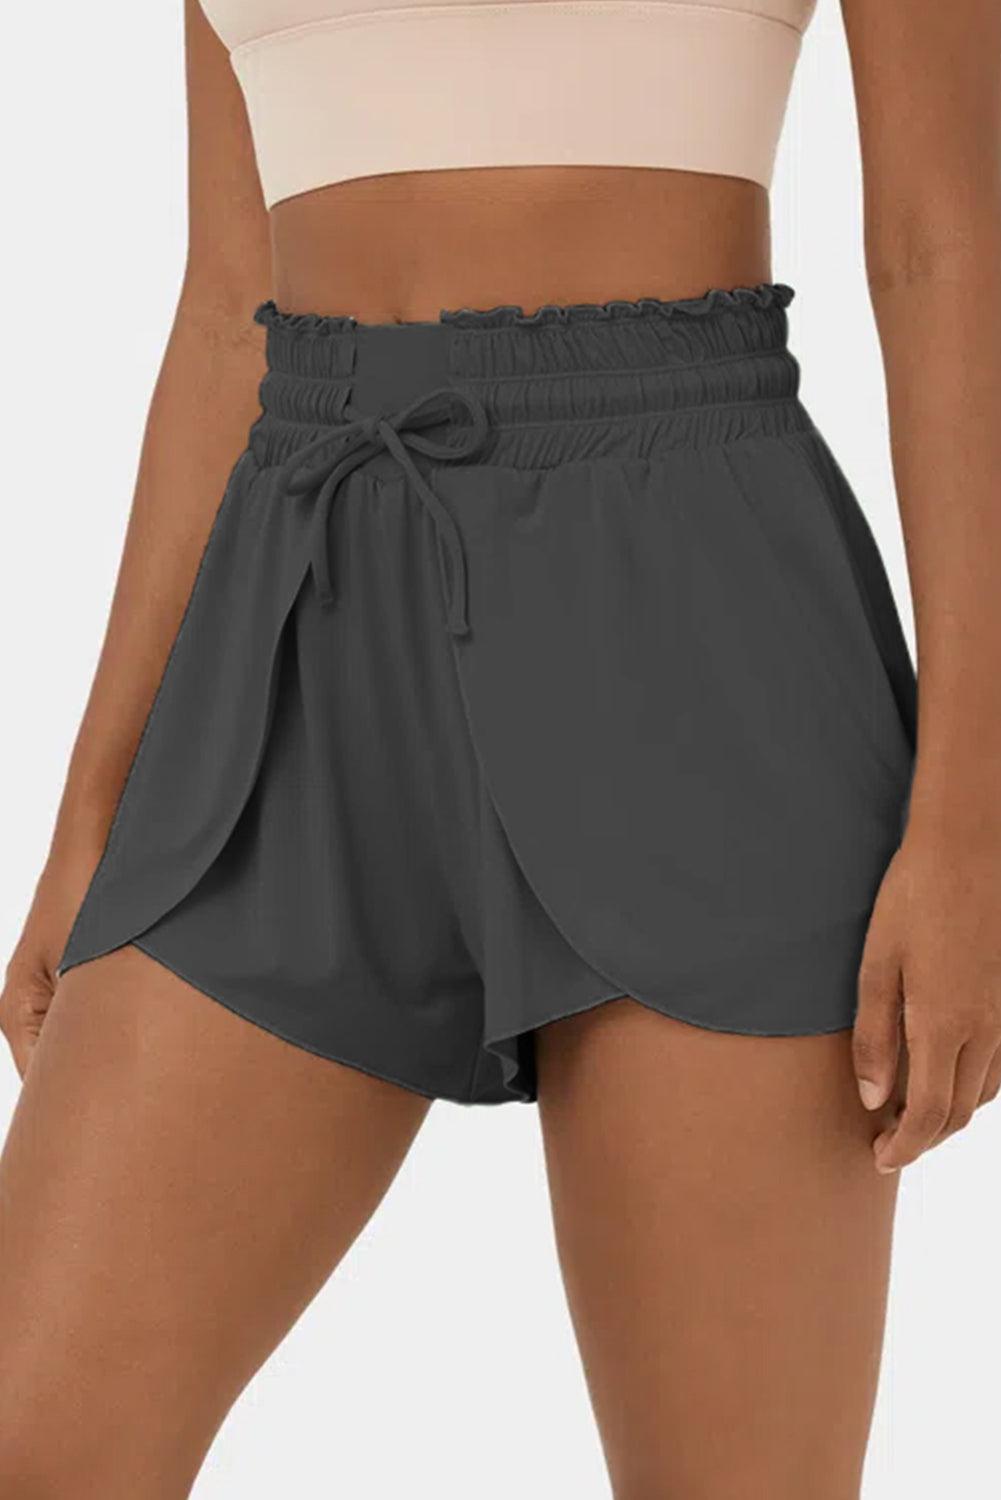 Dark Grey Frilly High Waist Petal Wrap Swim Shorts - L & M Kee, LLC